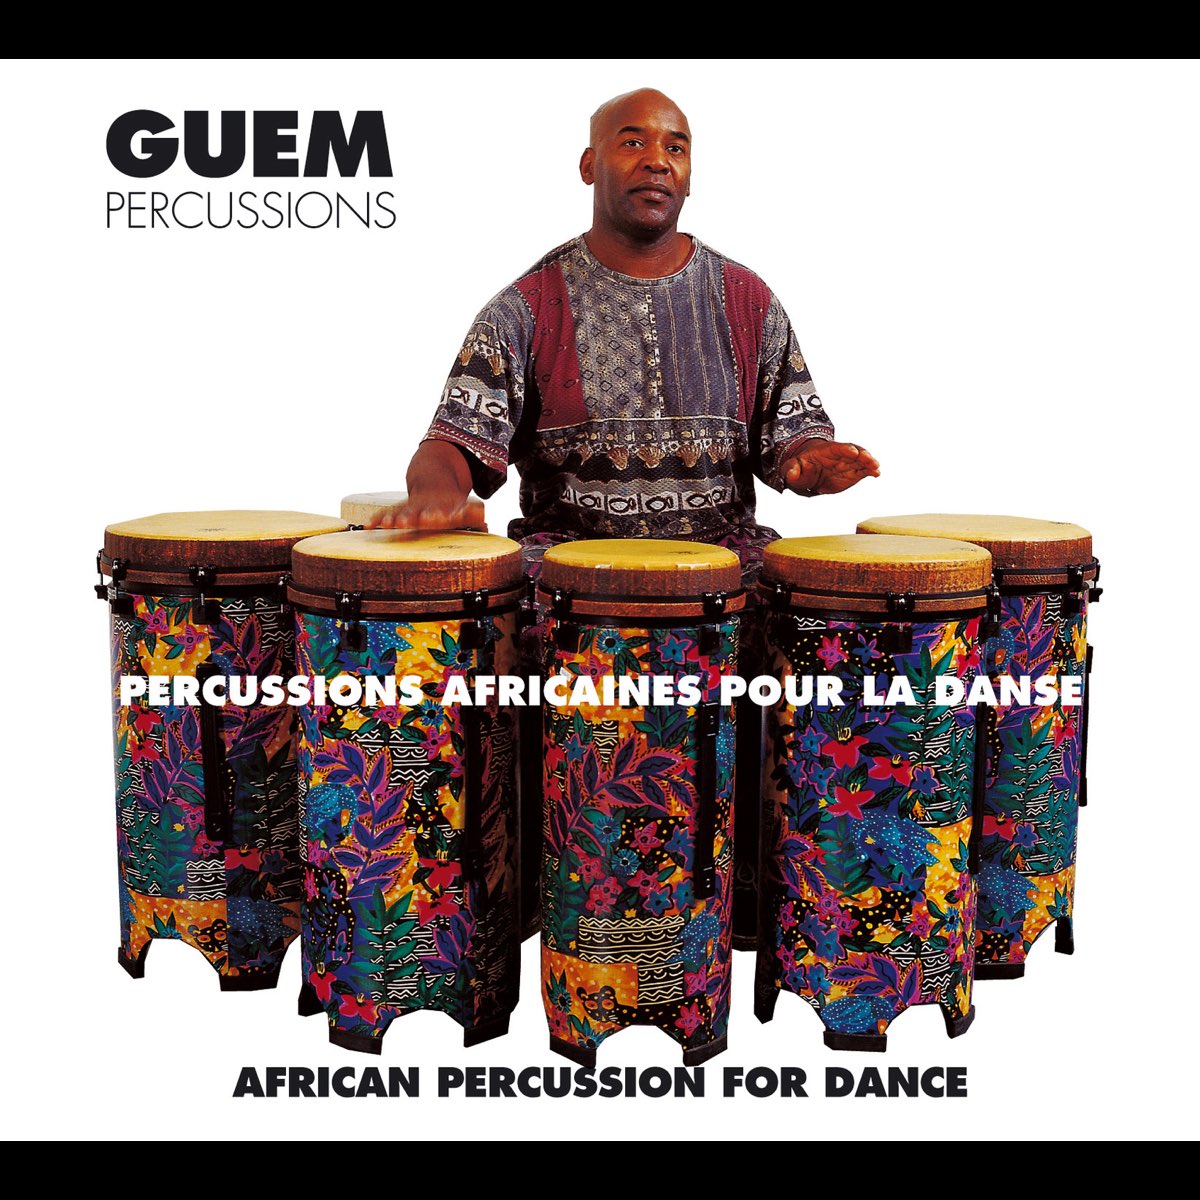 Percussions africaines pour la danse - Album by Guem - Apple Music